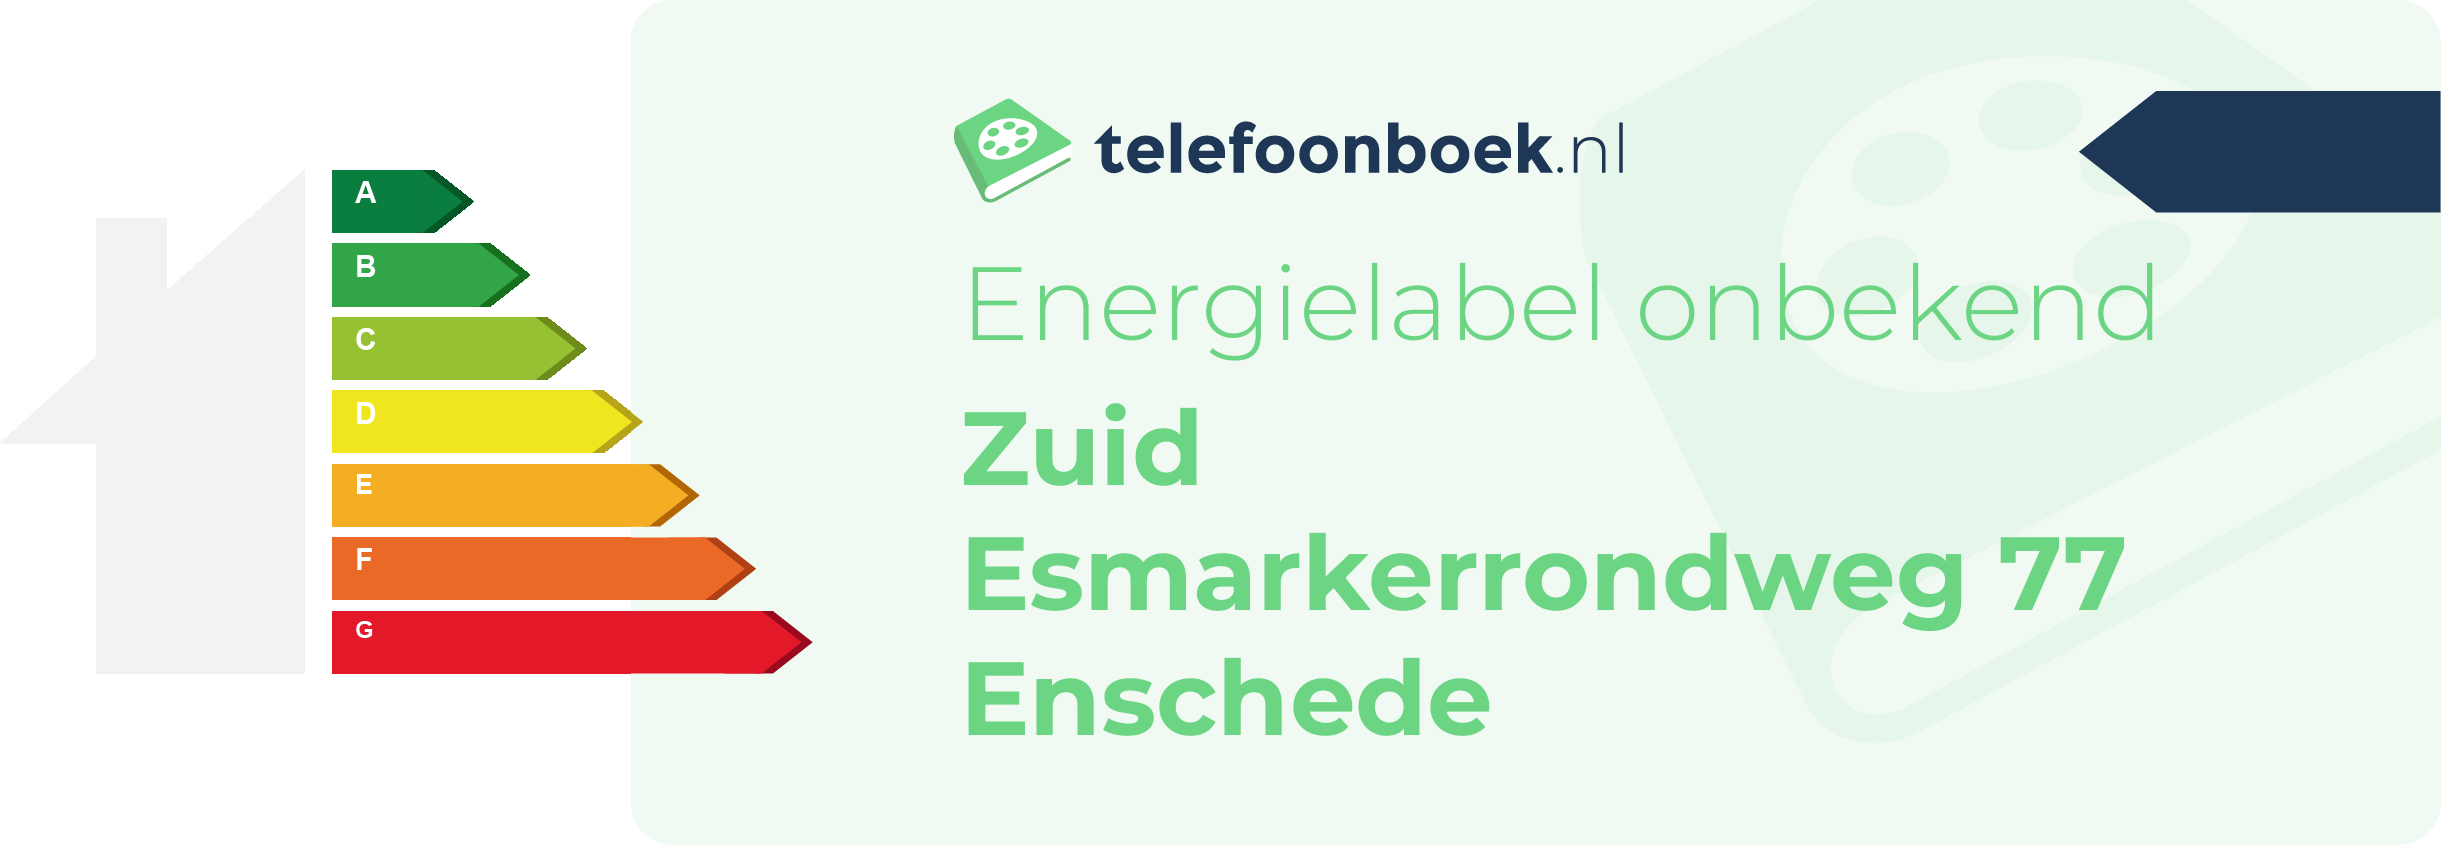 Energielabel Zuid Esmarkerrondweg 77 Enschede